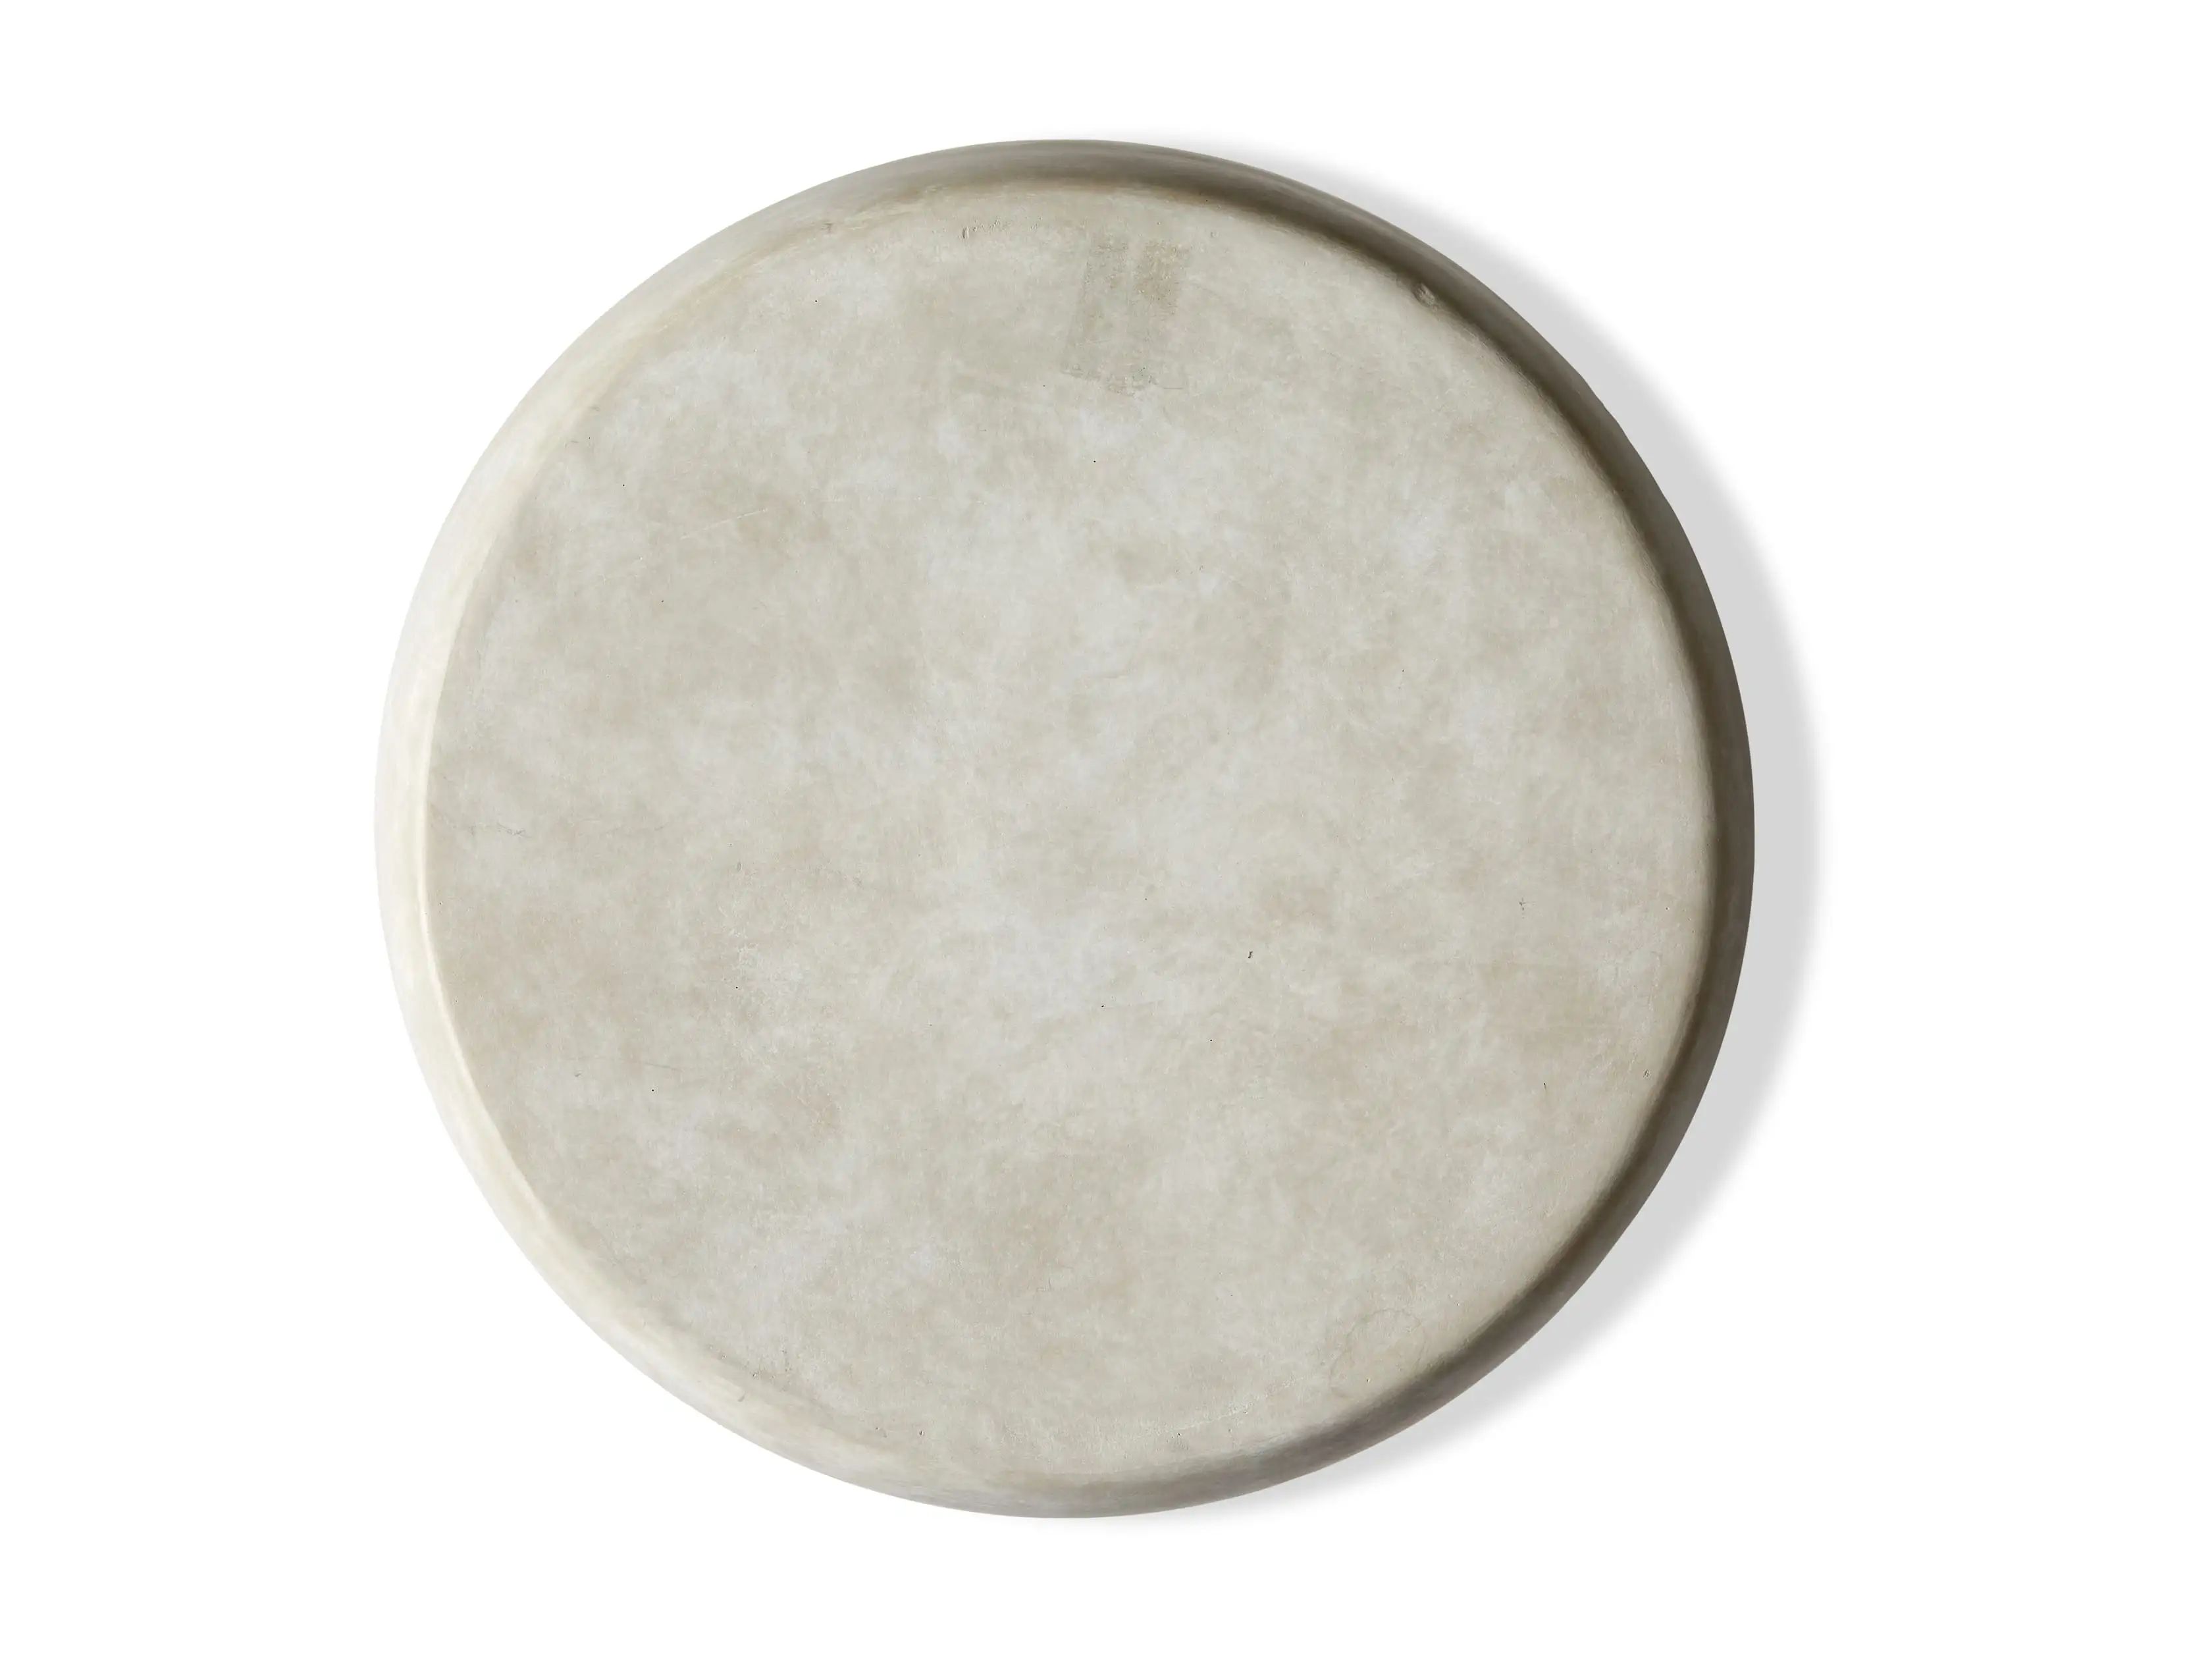 Plaster Stool in Grey | Arhaus